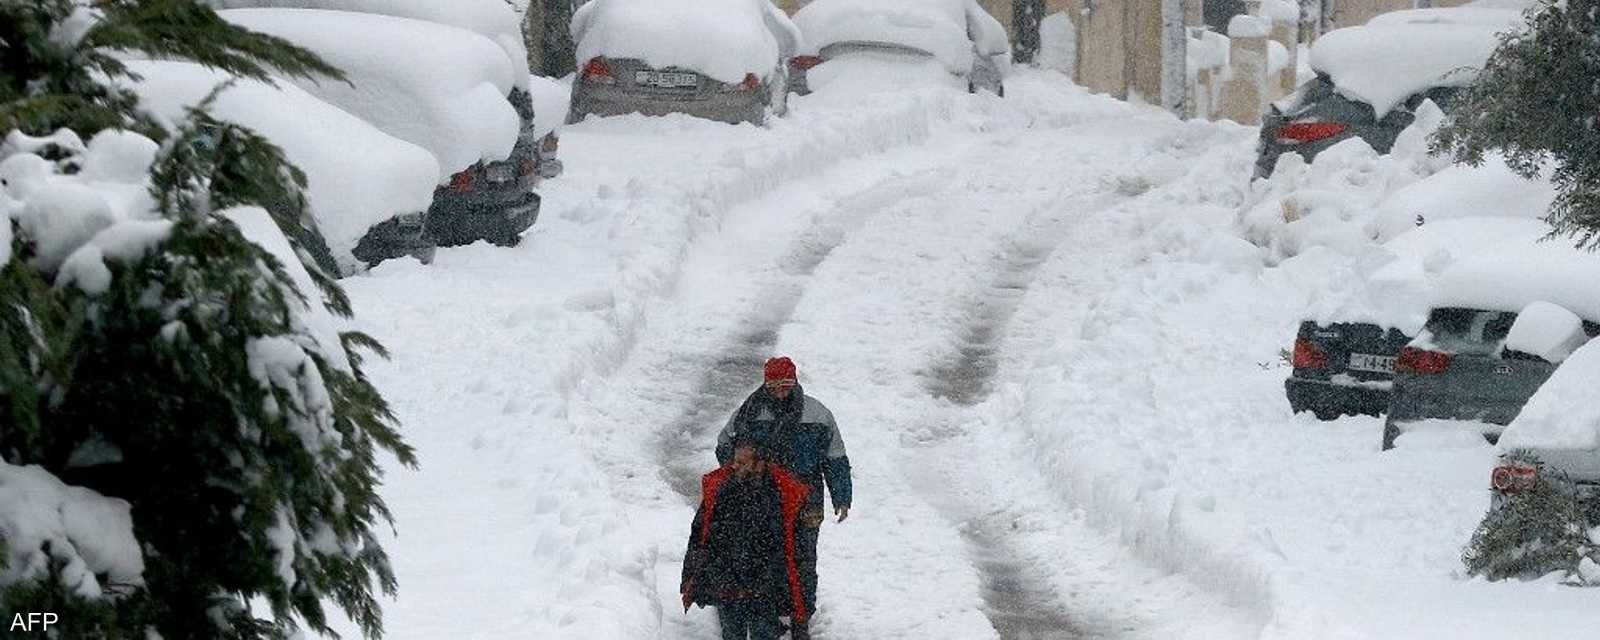 الثلوج كست العاصمة الأردنية